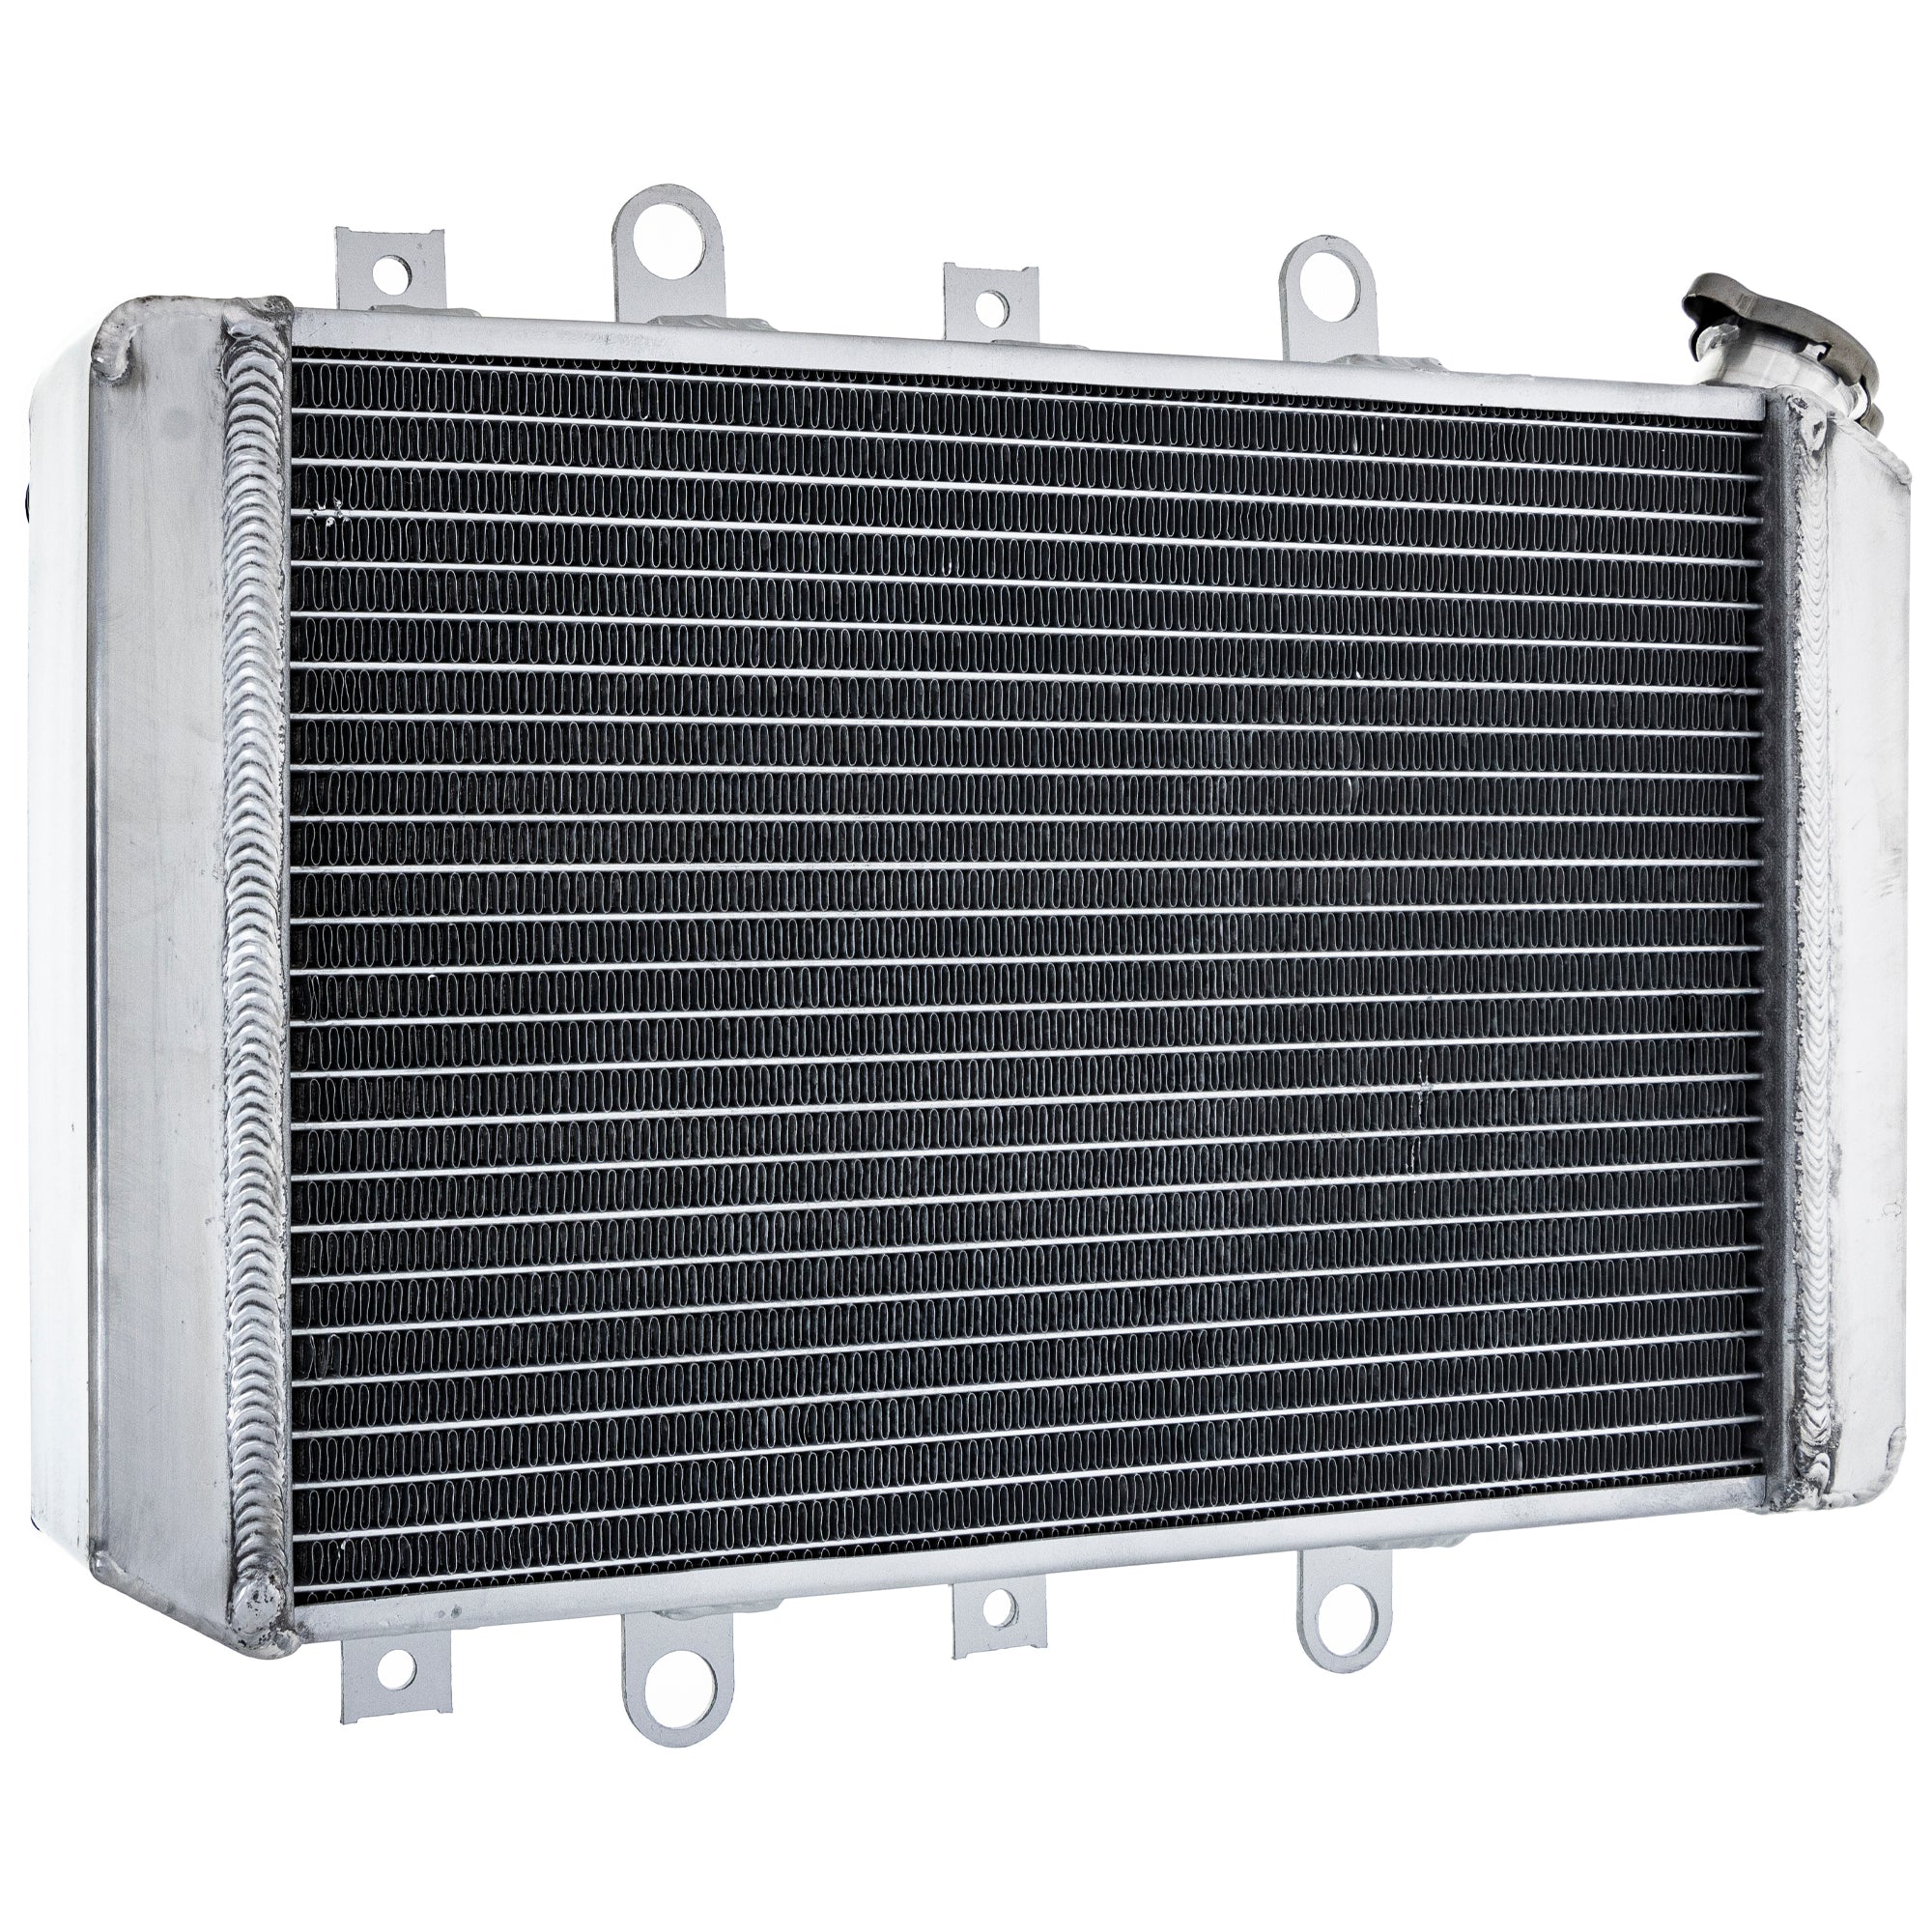 High Capacity Radiator For Yamaha 28P-1240A-00-00 1HP-E2460-01-00 1HP-E2460-00-00